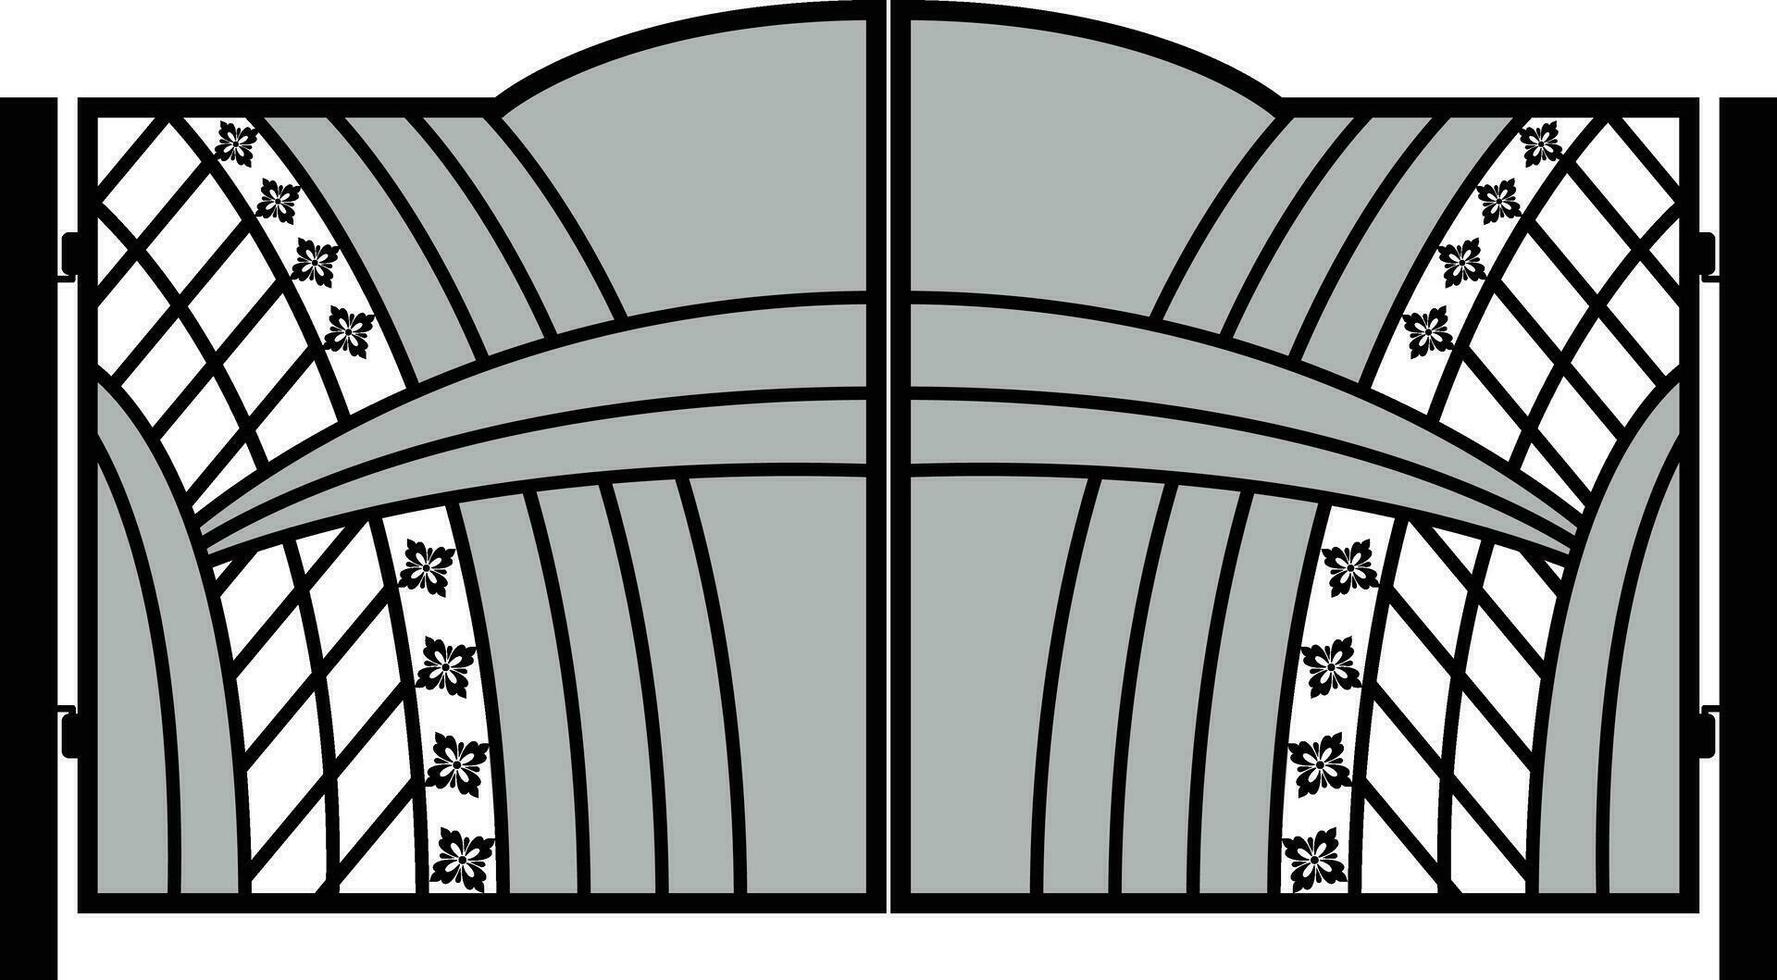 modern geschmiedet Tore, Tor Symbole, Portal Zeichen, dekorativ Metall Tore mit wirbelt, Pfeile, und Ornamente, Vektor Illustration